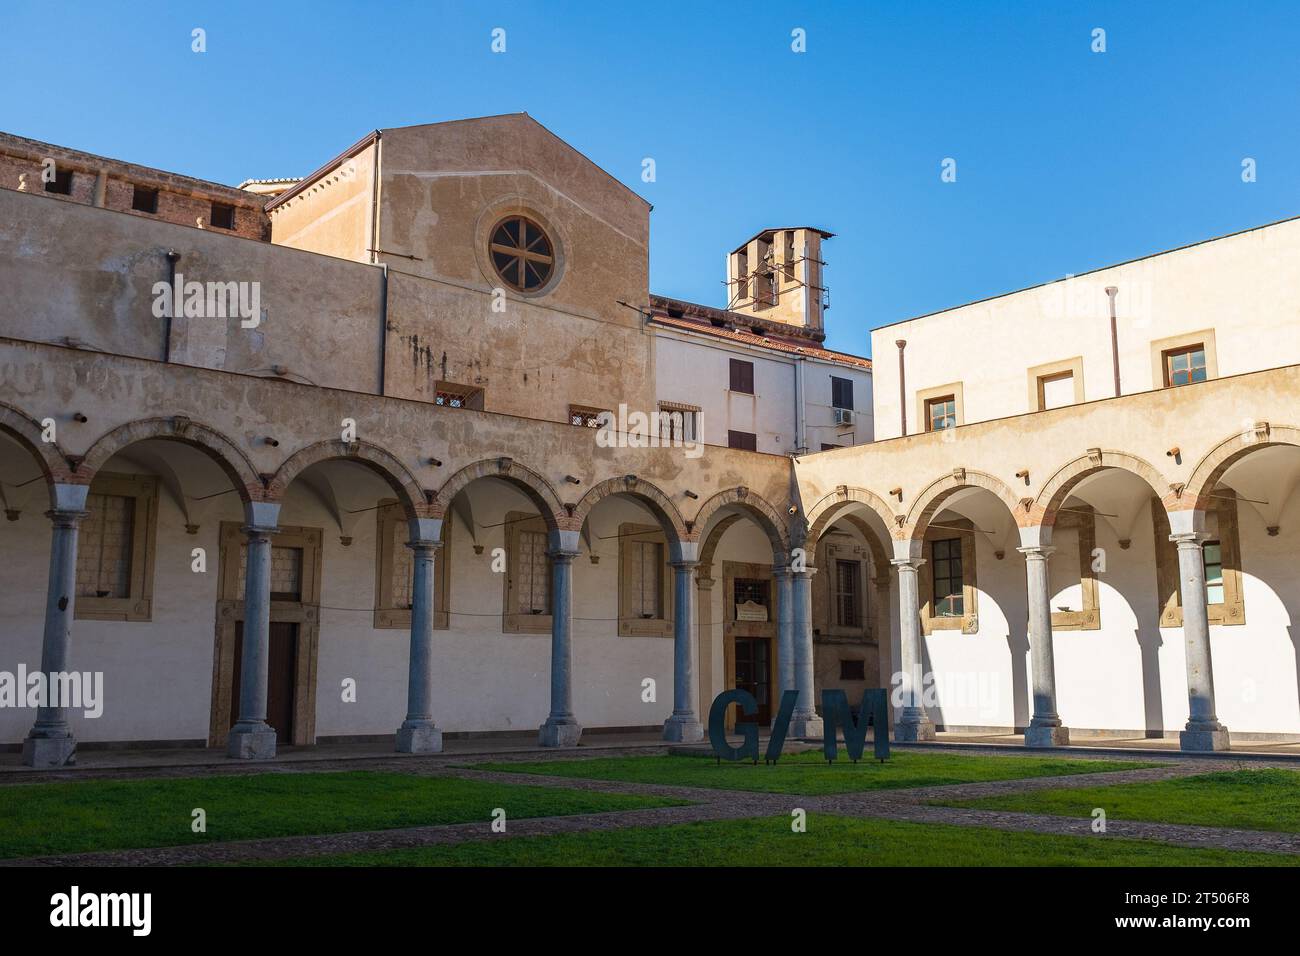 Palermo, Sicilia, 2016. Il giardino della Galleria d'Arte moderna situato nell'antico chiostro del convento francescano di Sant'Anna alla Misericordia Foto Stock